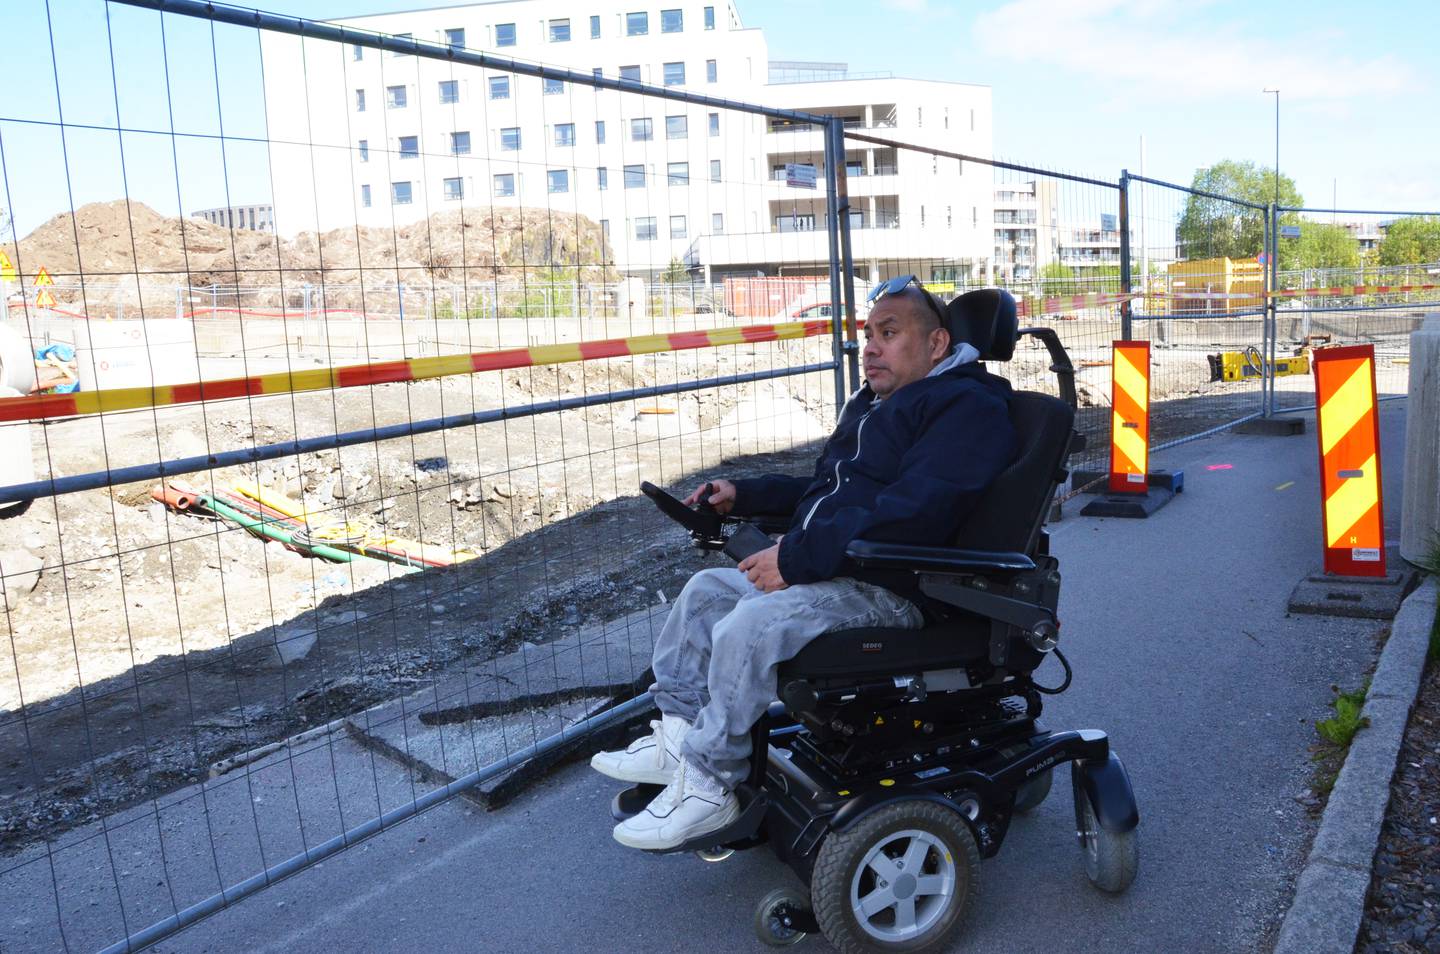 Byggeplassgjerdene flyttes ofte. - Det hender at settes slik at man ikke kan kjøre langs med rullestol, forteller Nymark.